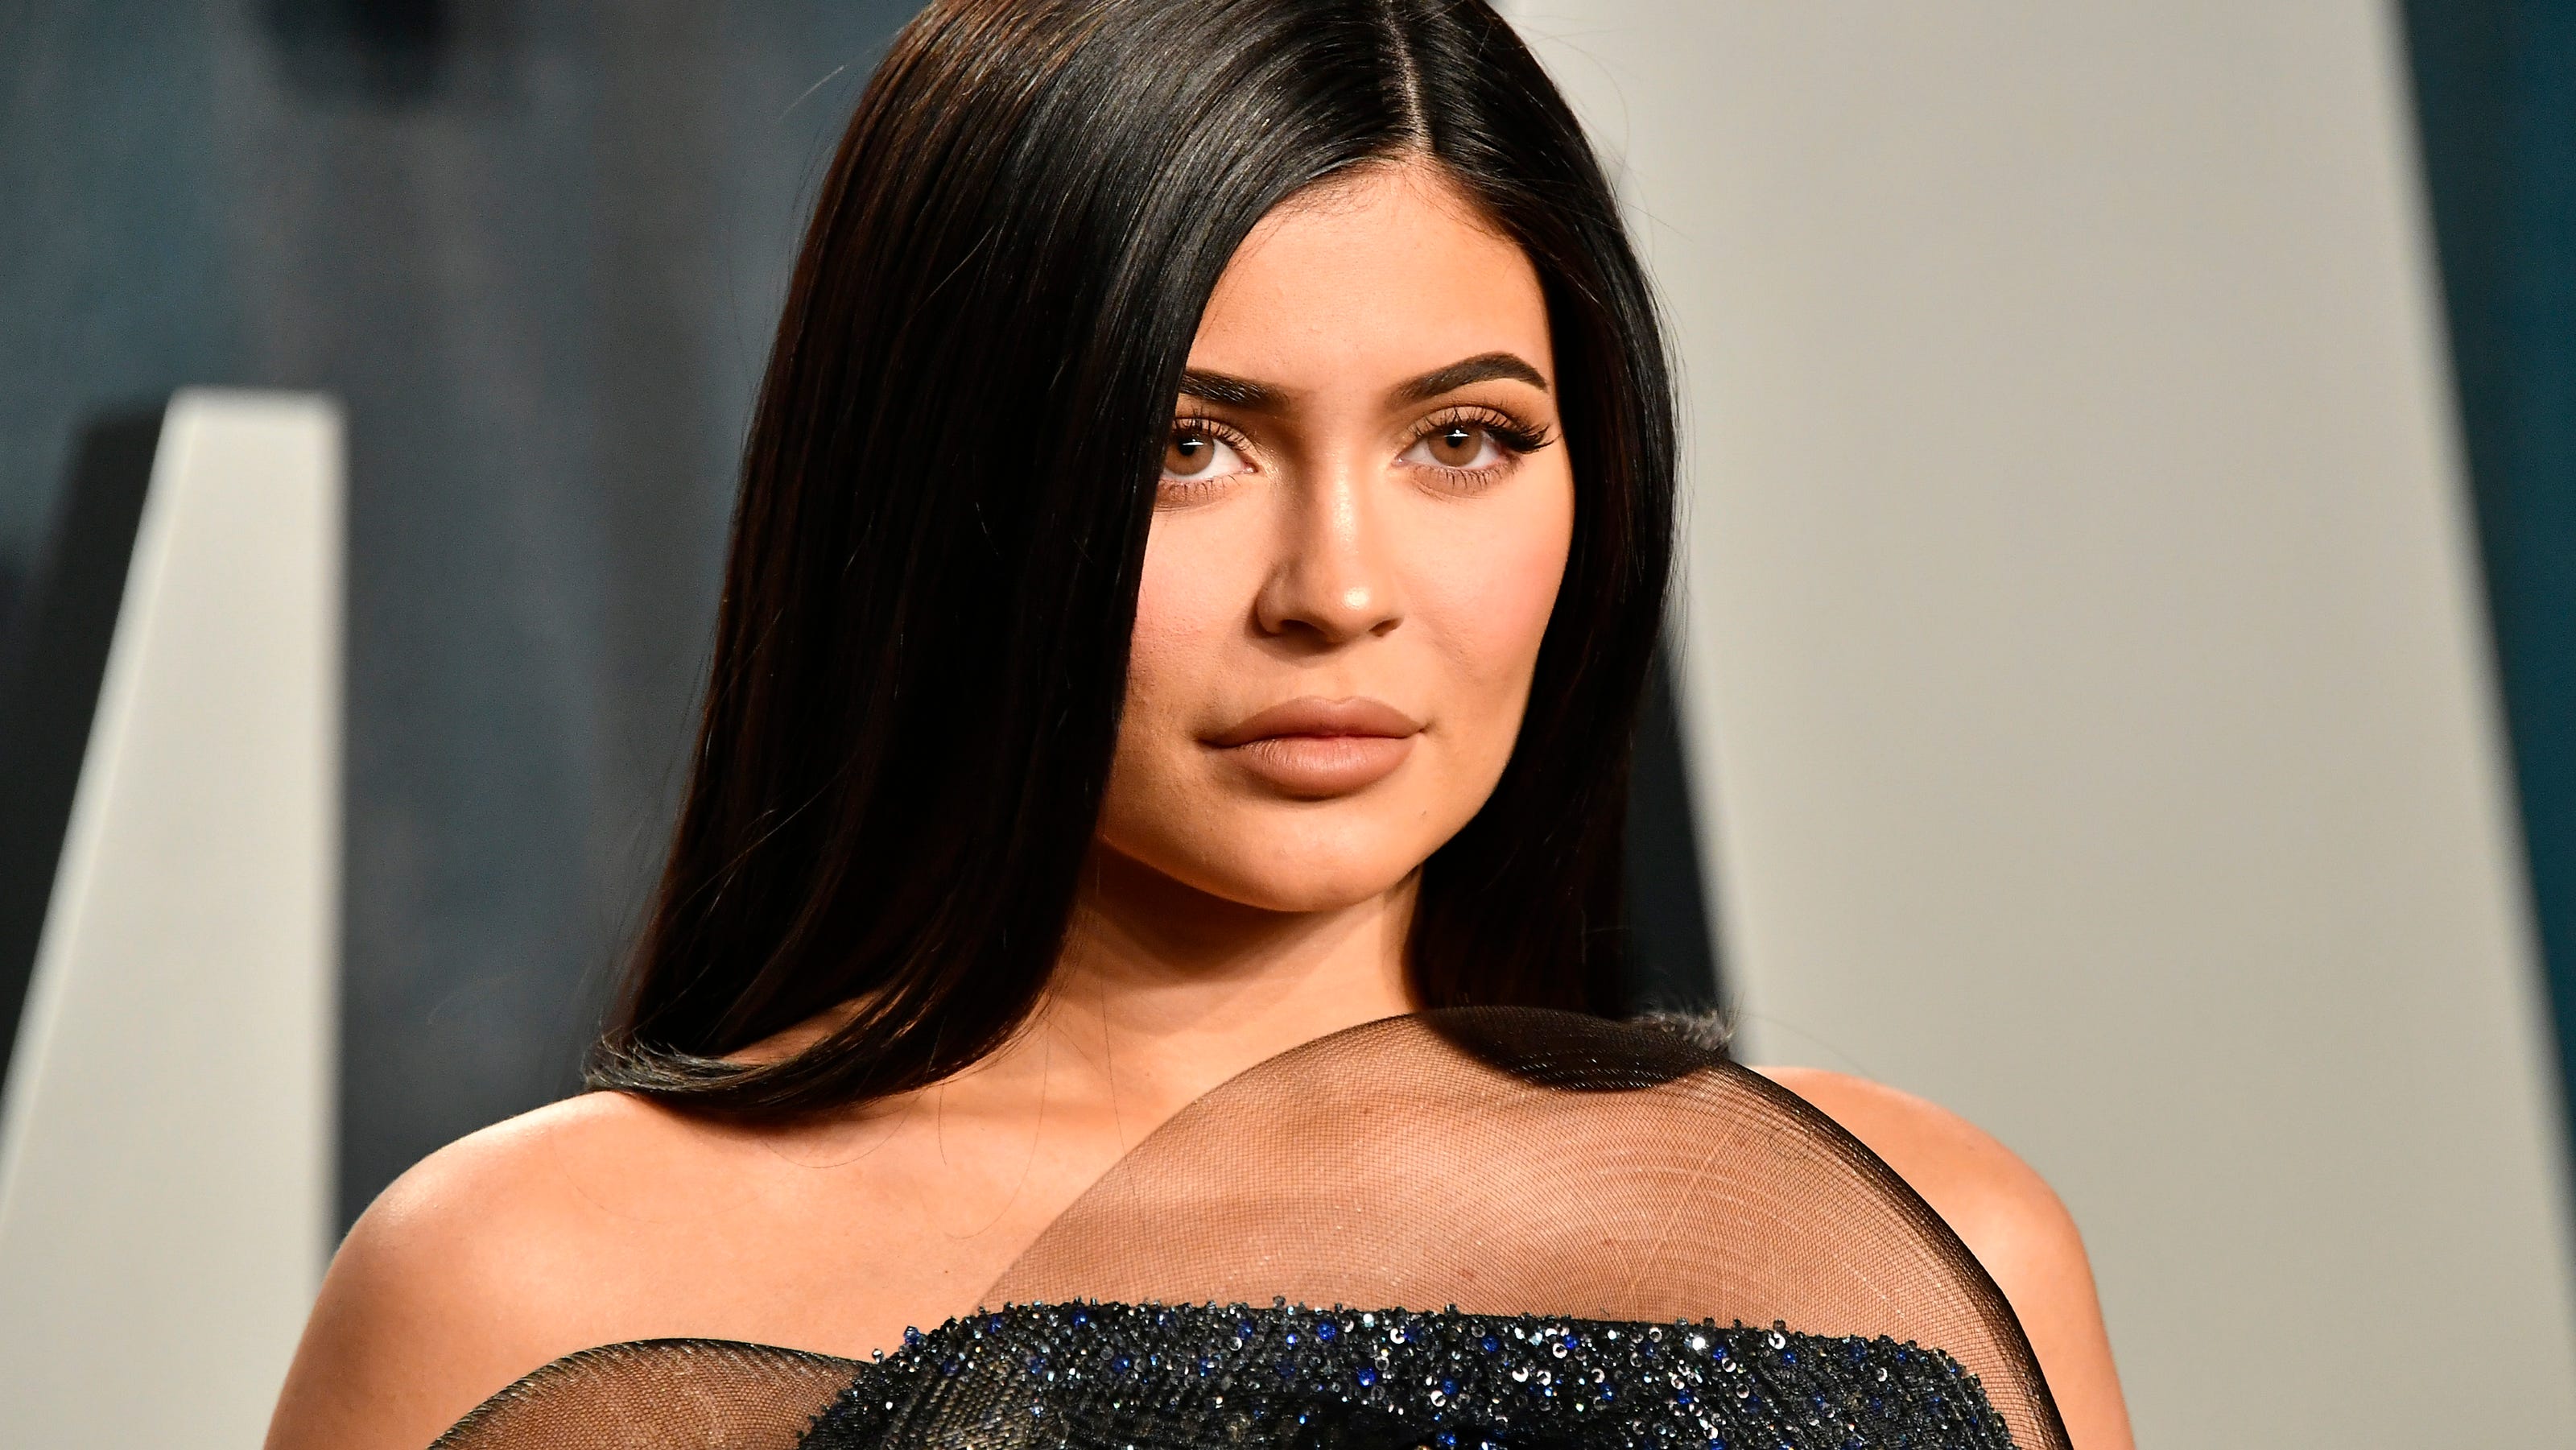 Kylie Jenner Net Worth 2020, Bio, Career, Family